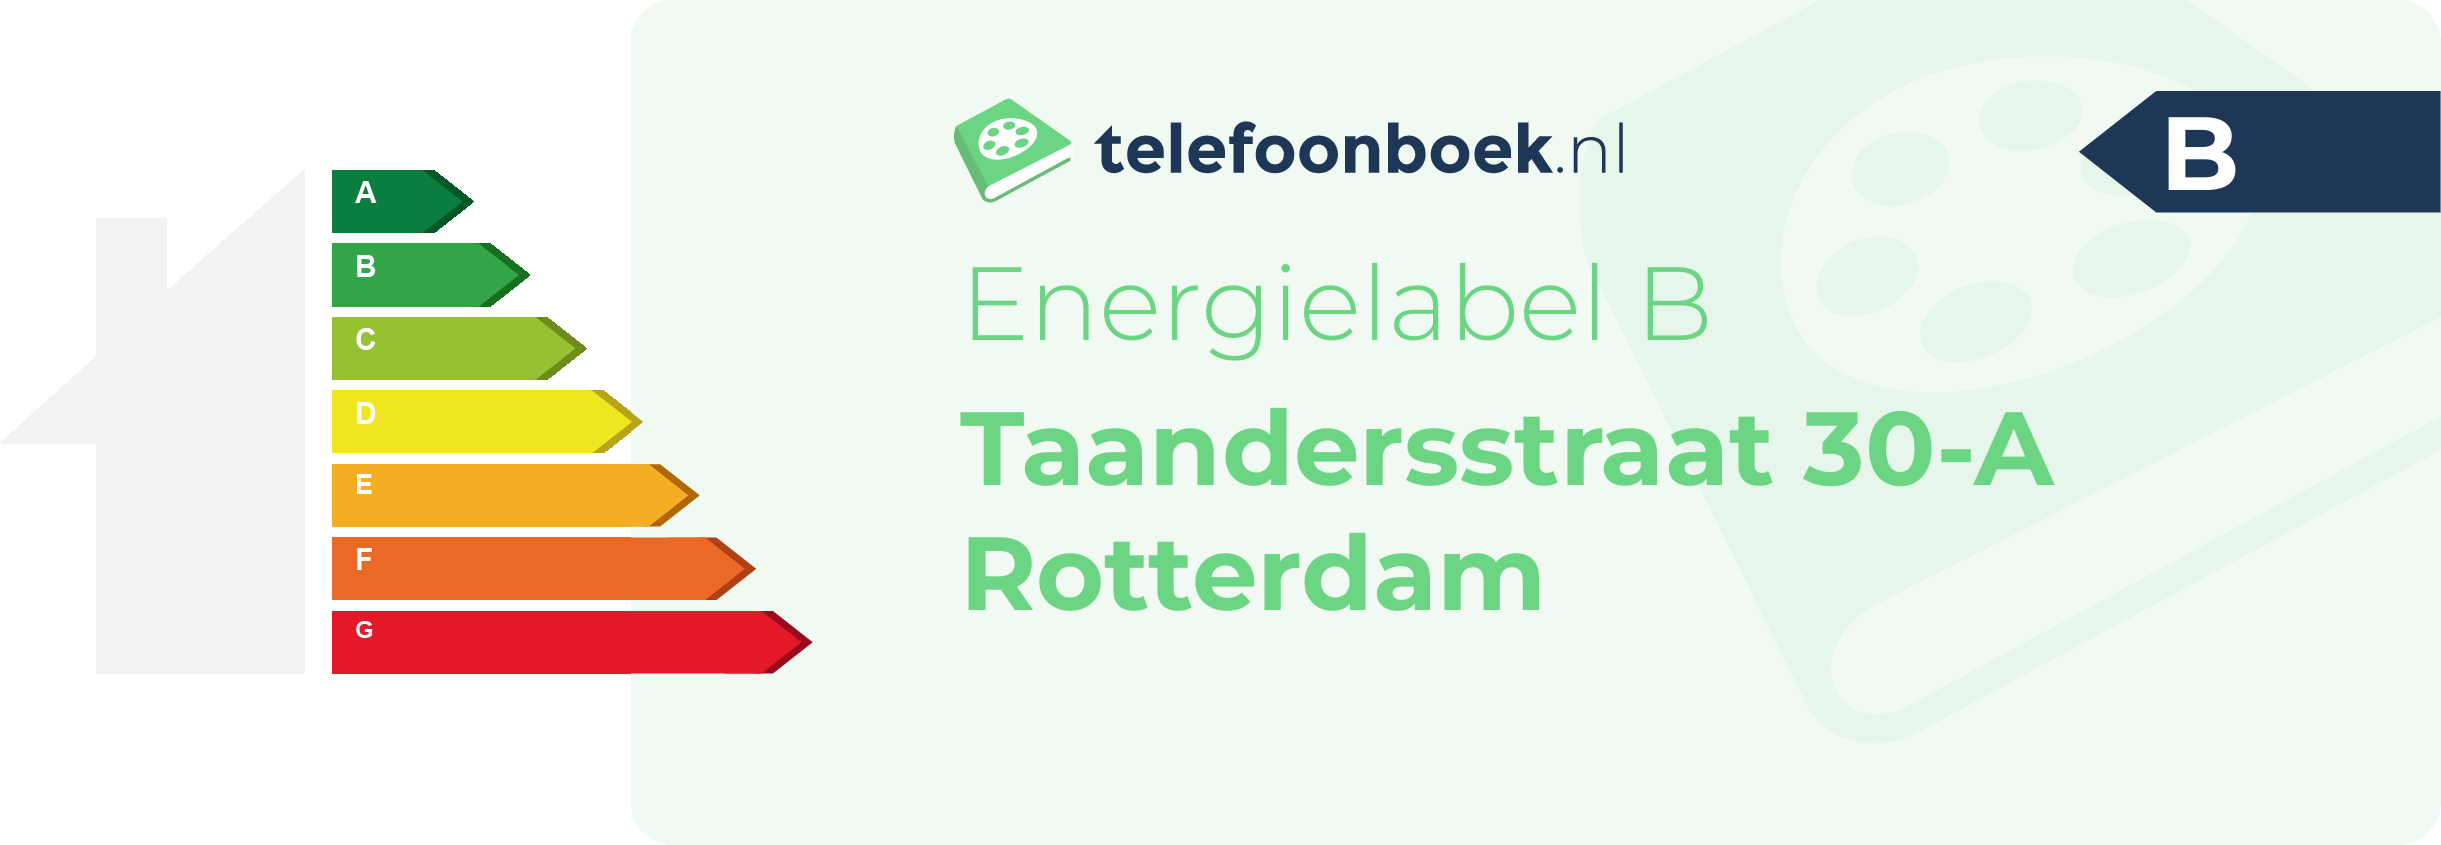 Energielabel Taandersstraat 30-A Rotterdam